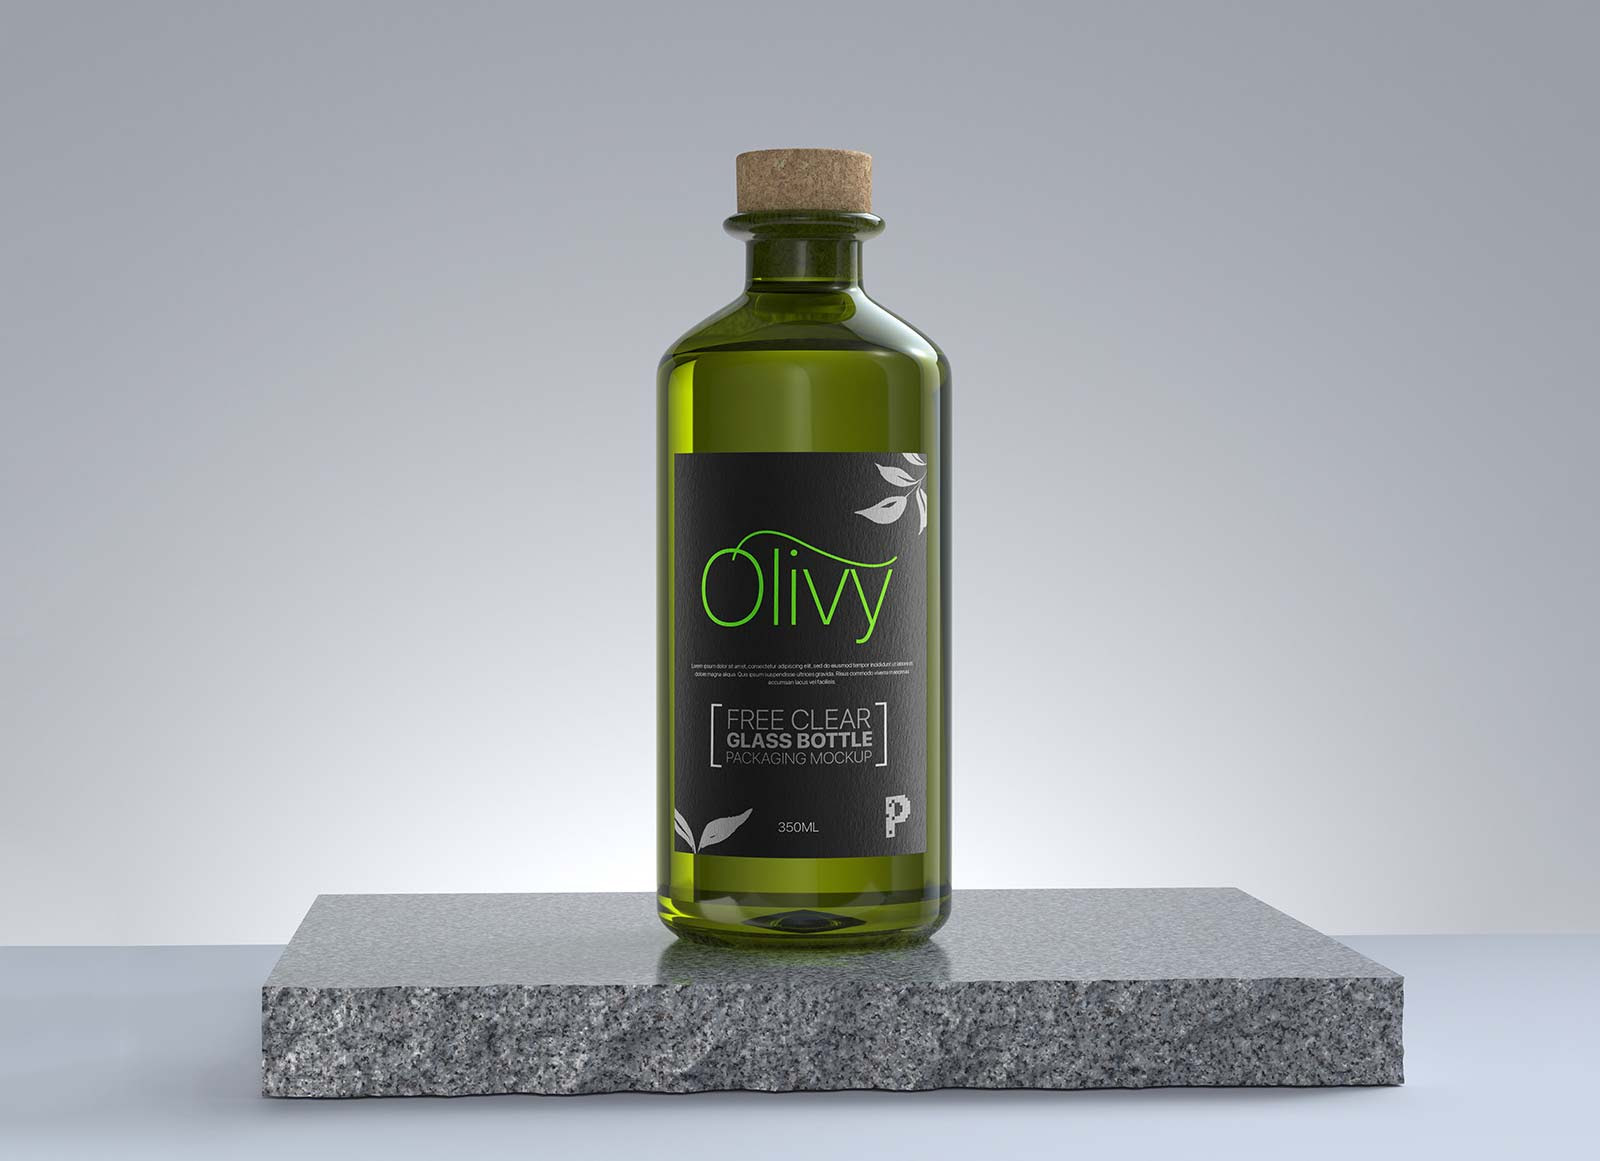 Free Clear Glass Olive Oil Cork Bottle Mockup PSD Good Mockups